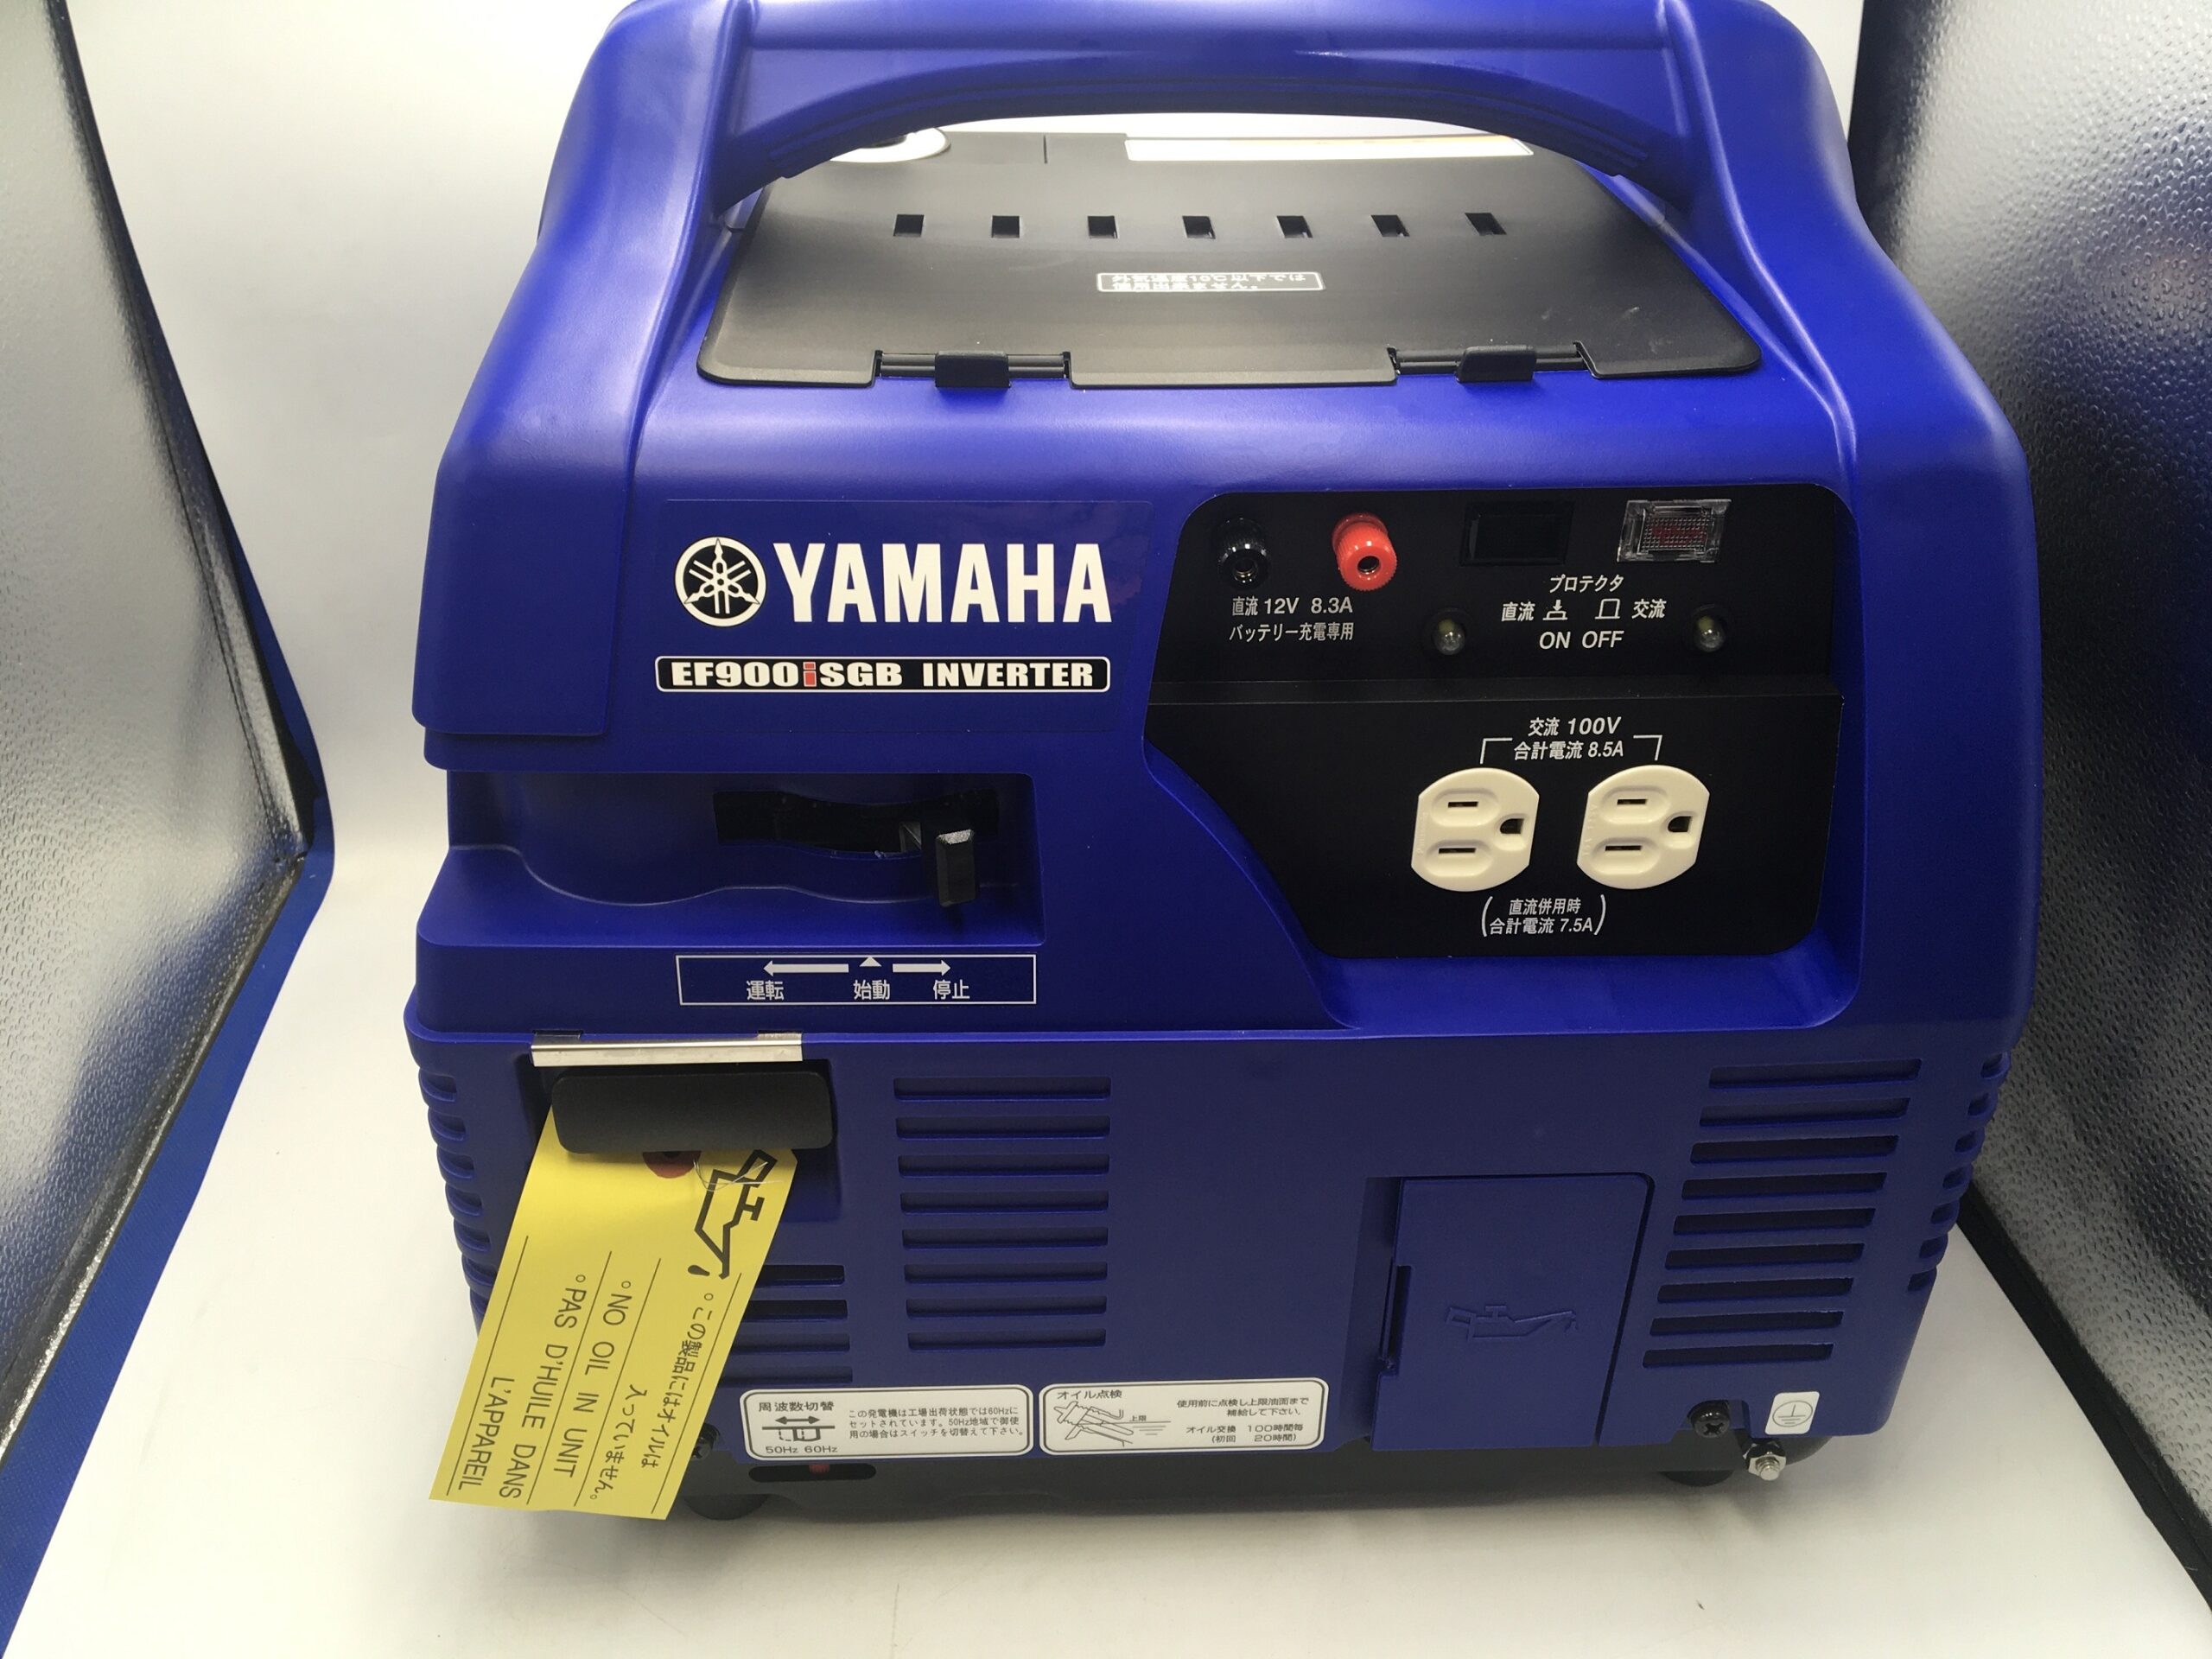 ヤマハ/YAMAHA 防音型 ガス式インバーター発電機 EF900iSGBを愛知県 安